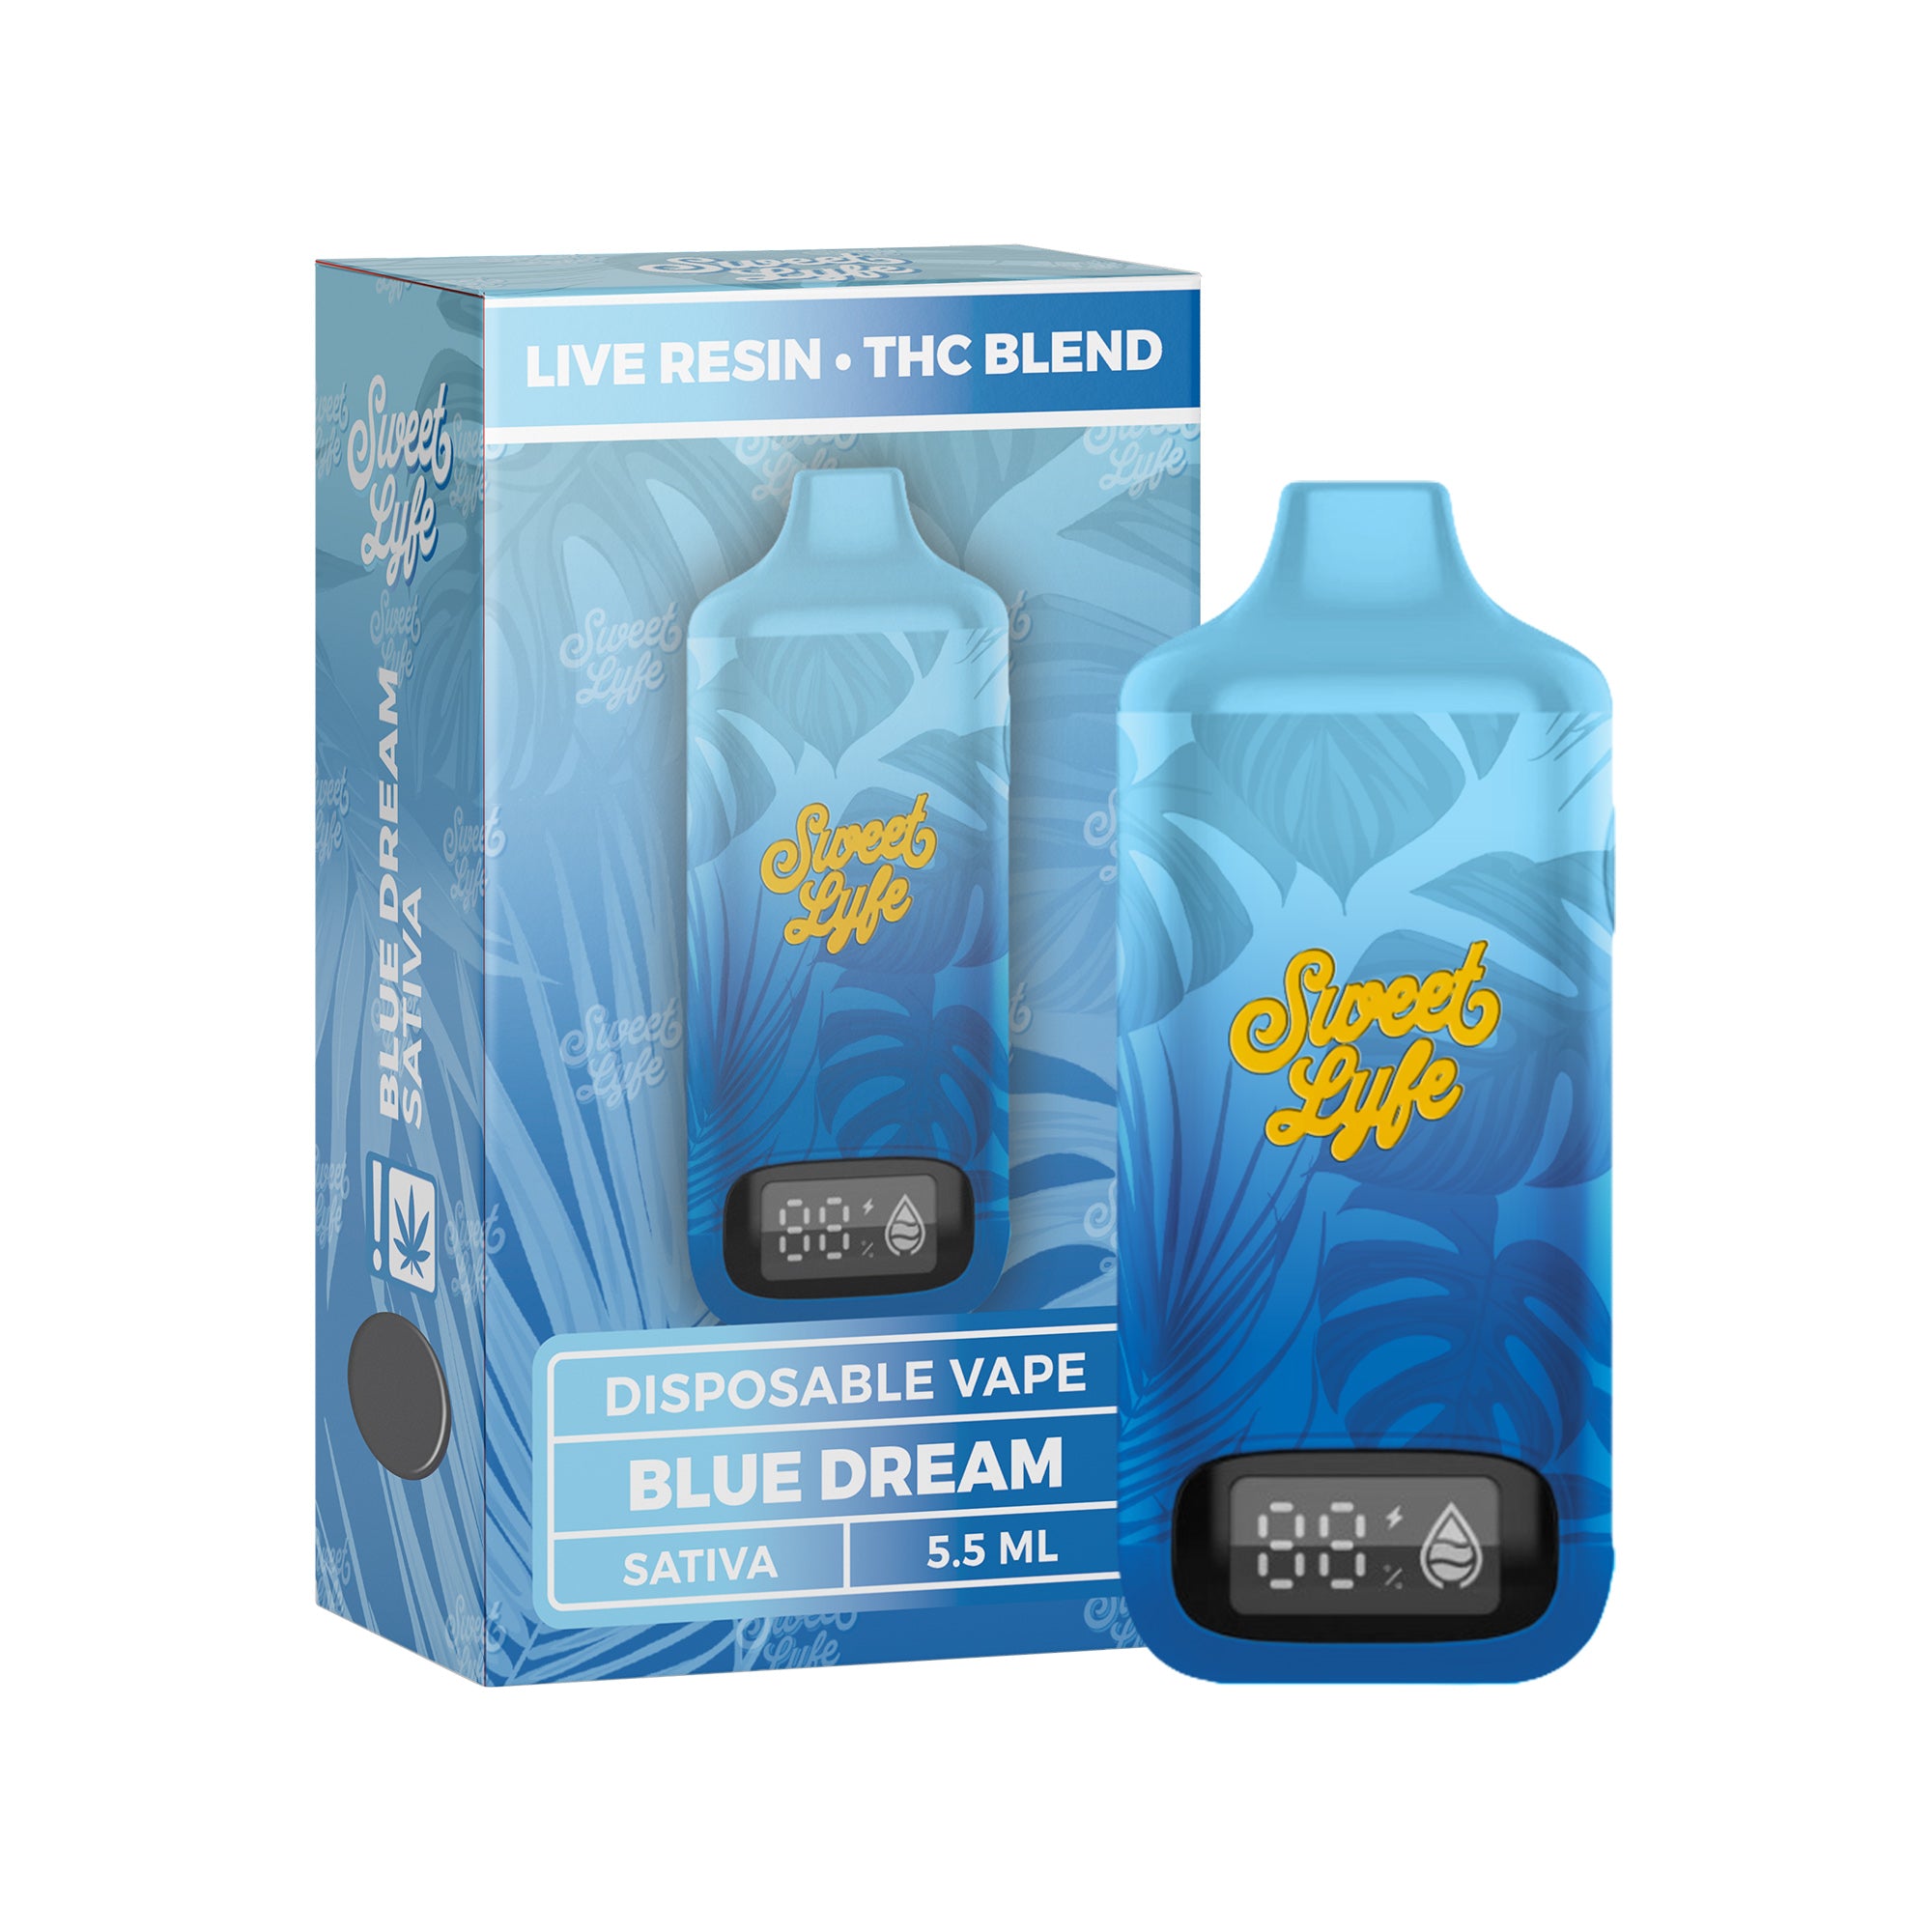 5.5ML Disposable - Live Resin • THC Blend  - Blue Dream - Sativa